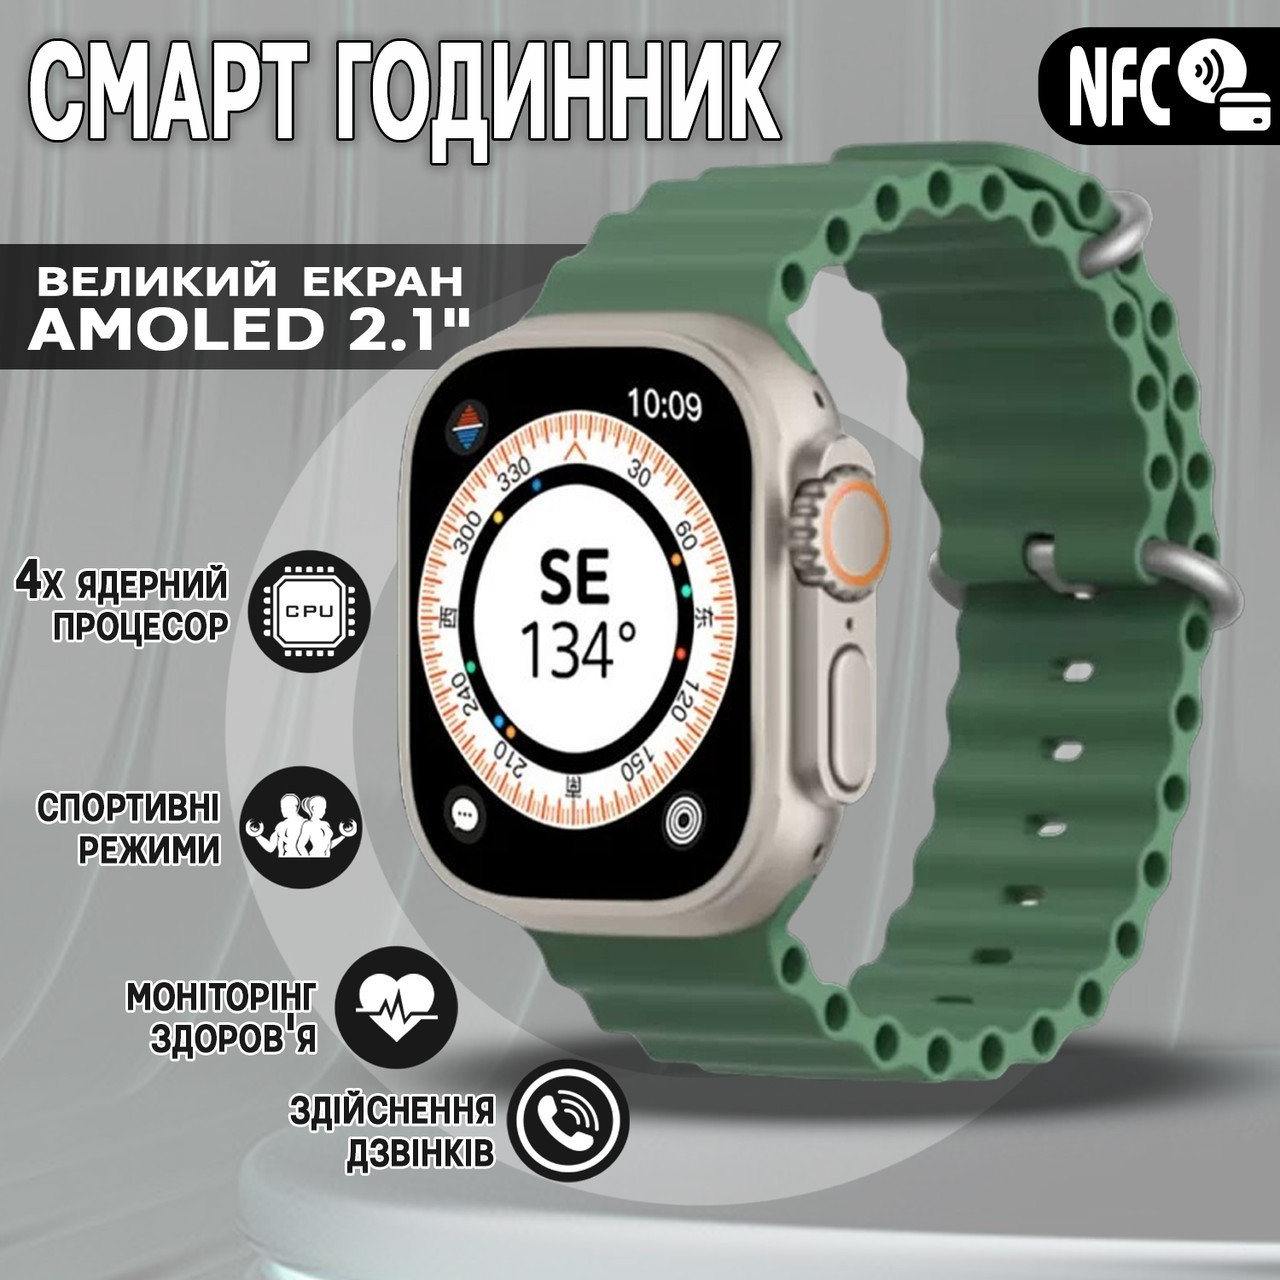 Смарт годинник Smart Watch ULTRA MAX 9-2.1" спортивні режими, цілодобовий моніторинг здоров'я Green